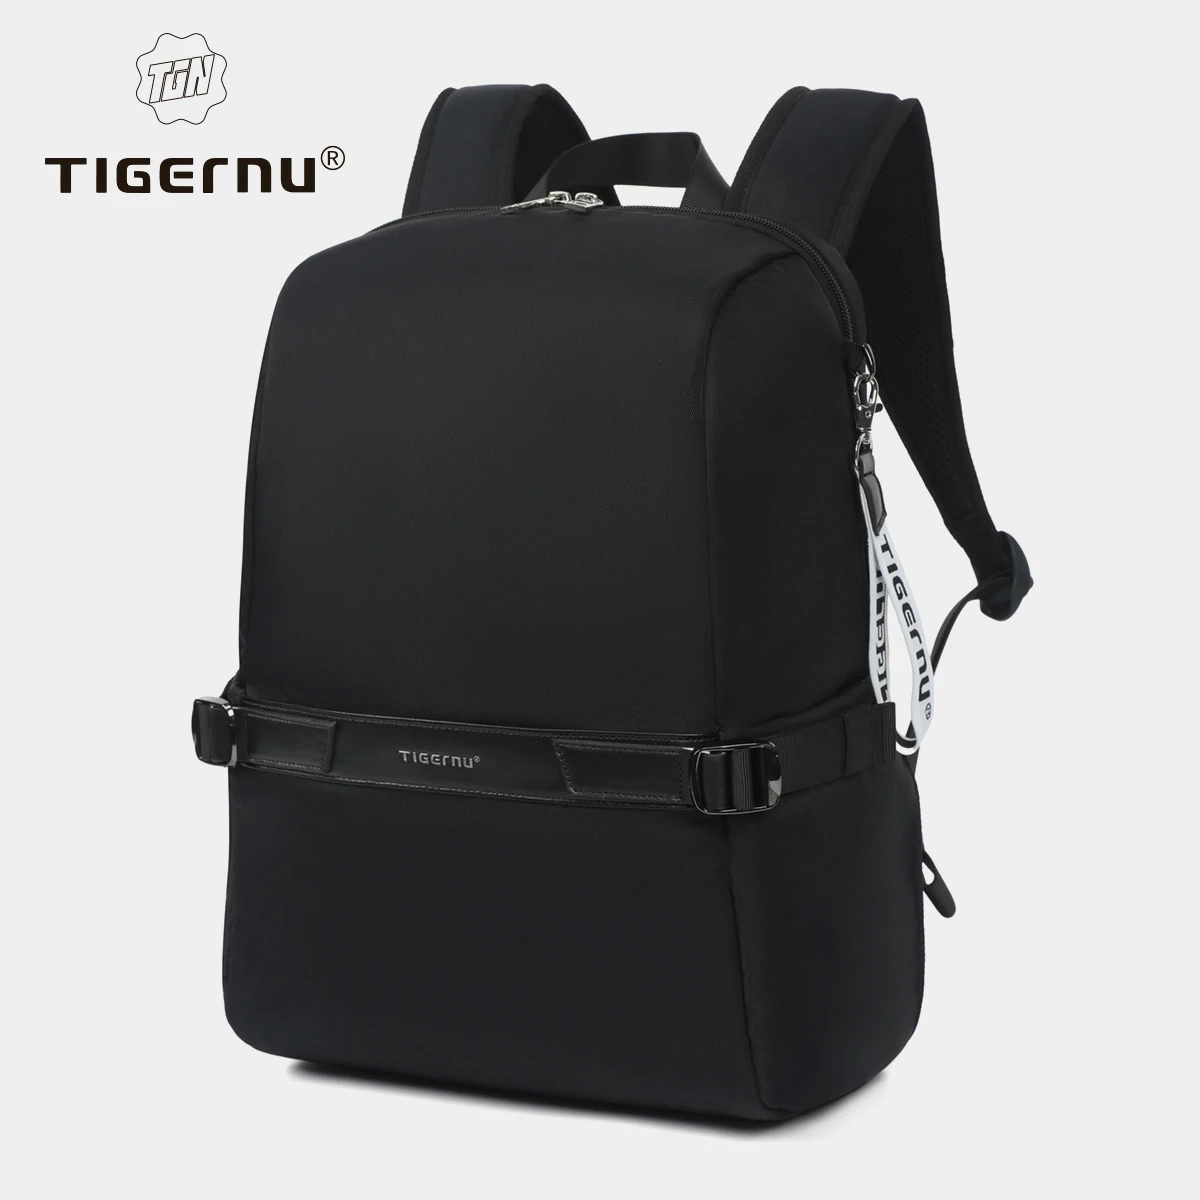 

Tigernu T-B9511 lightweight waterproof casual sport backpack unisex backpacks men college bags laptop backpack bag